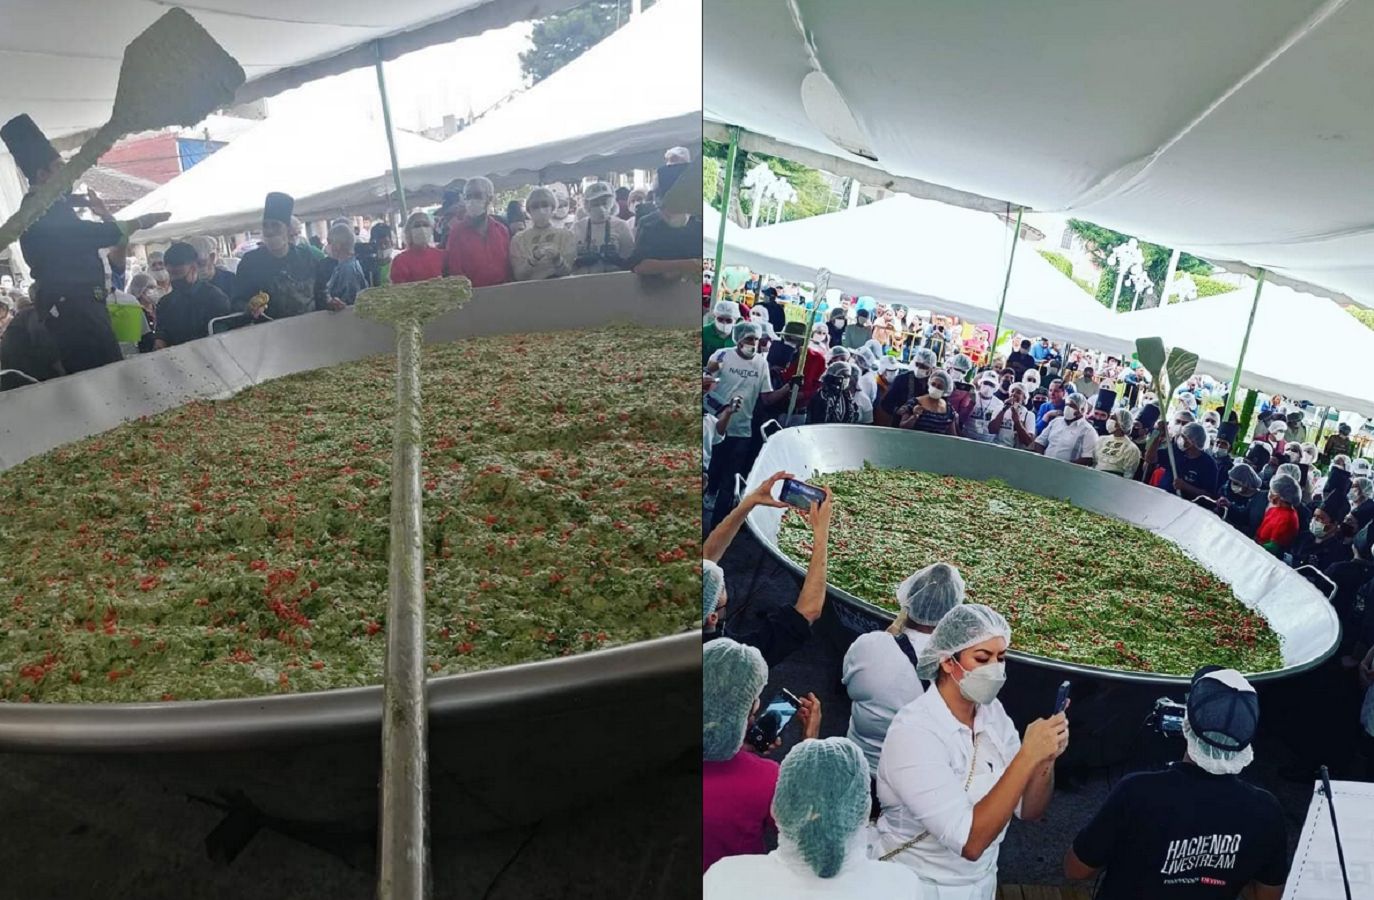 Meksyk świętuje. Rekord Guinnessa za największe guacamole świata